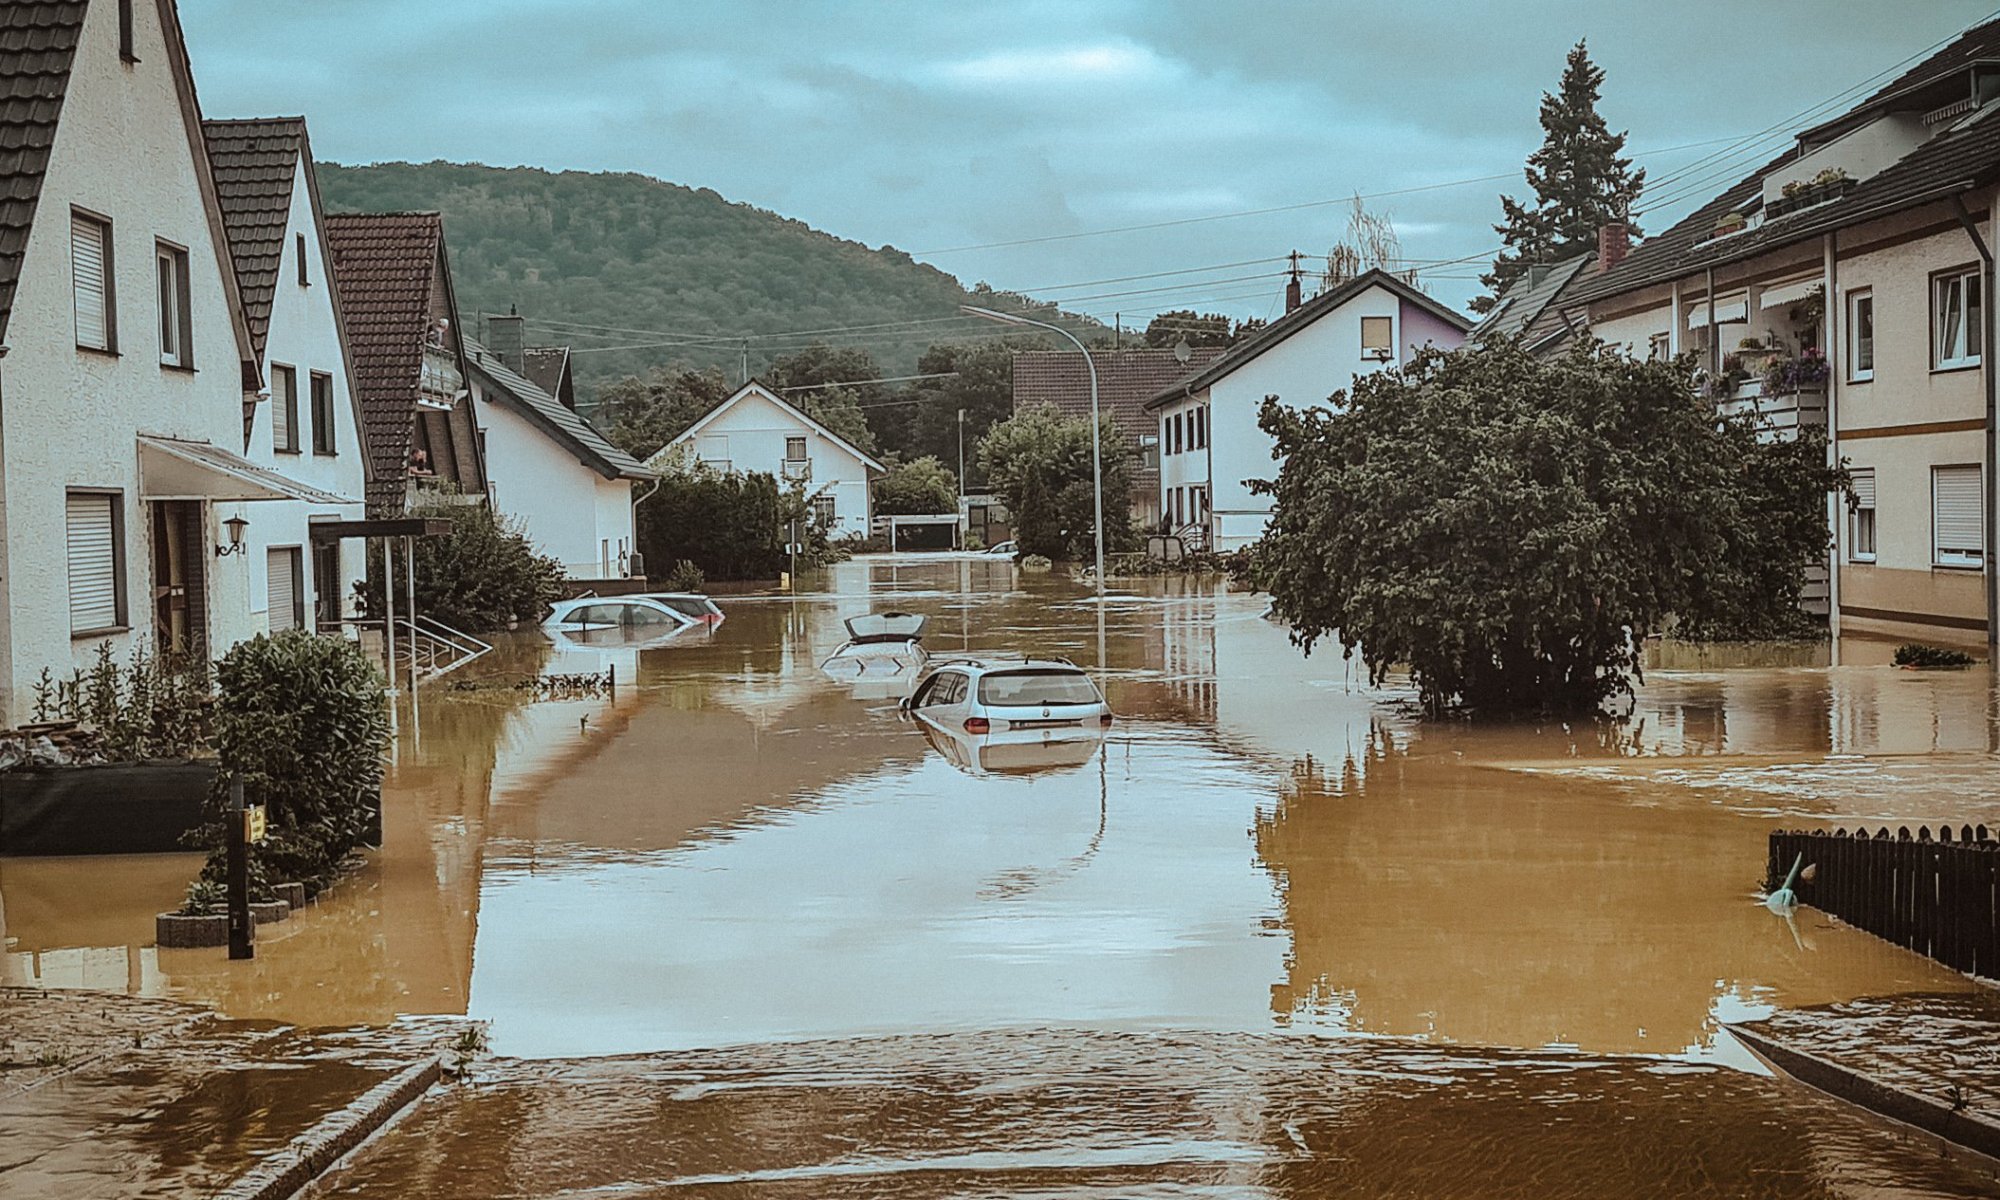 Überflutete Wohngegend in Sinzig (Landkreis Ahrweiler) https://twitter.com/hagen_hoppe/status/1537025220455940096